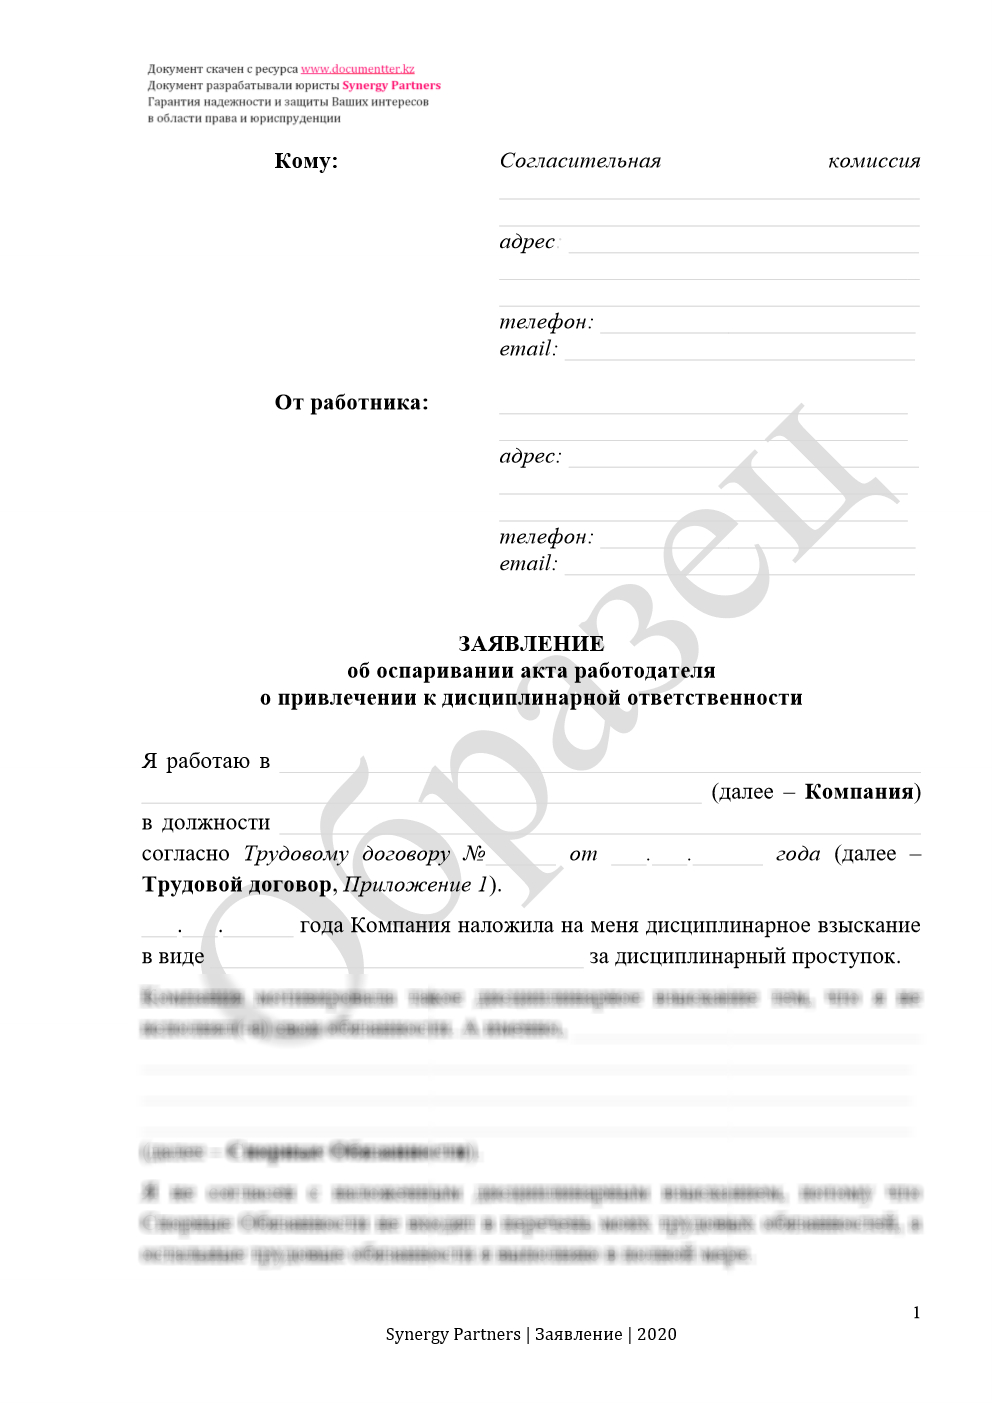 Заявление в согласительную комиссию, если незаконно наложили дисциплинарное взыскание | documentterkz.com в Казахстане